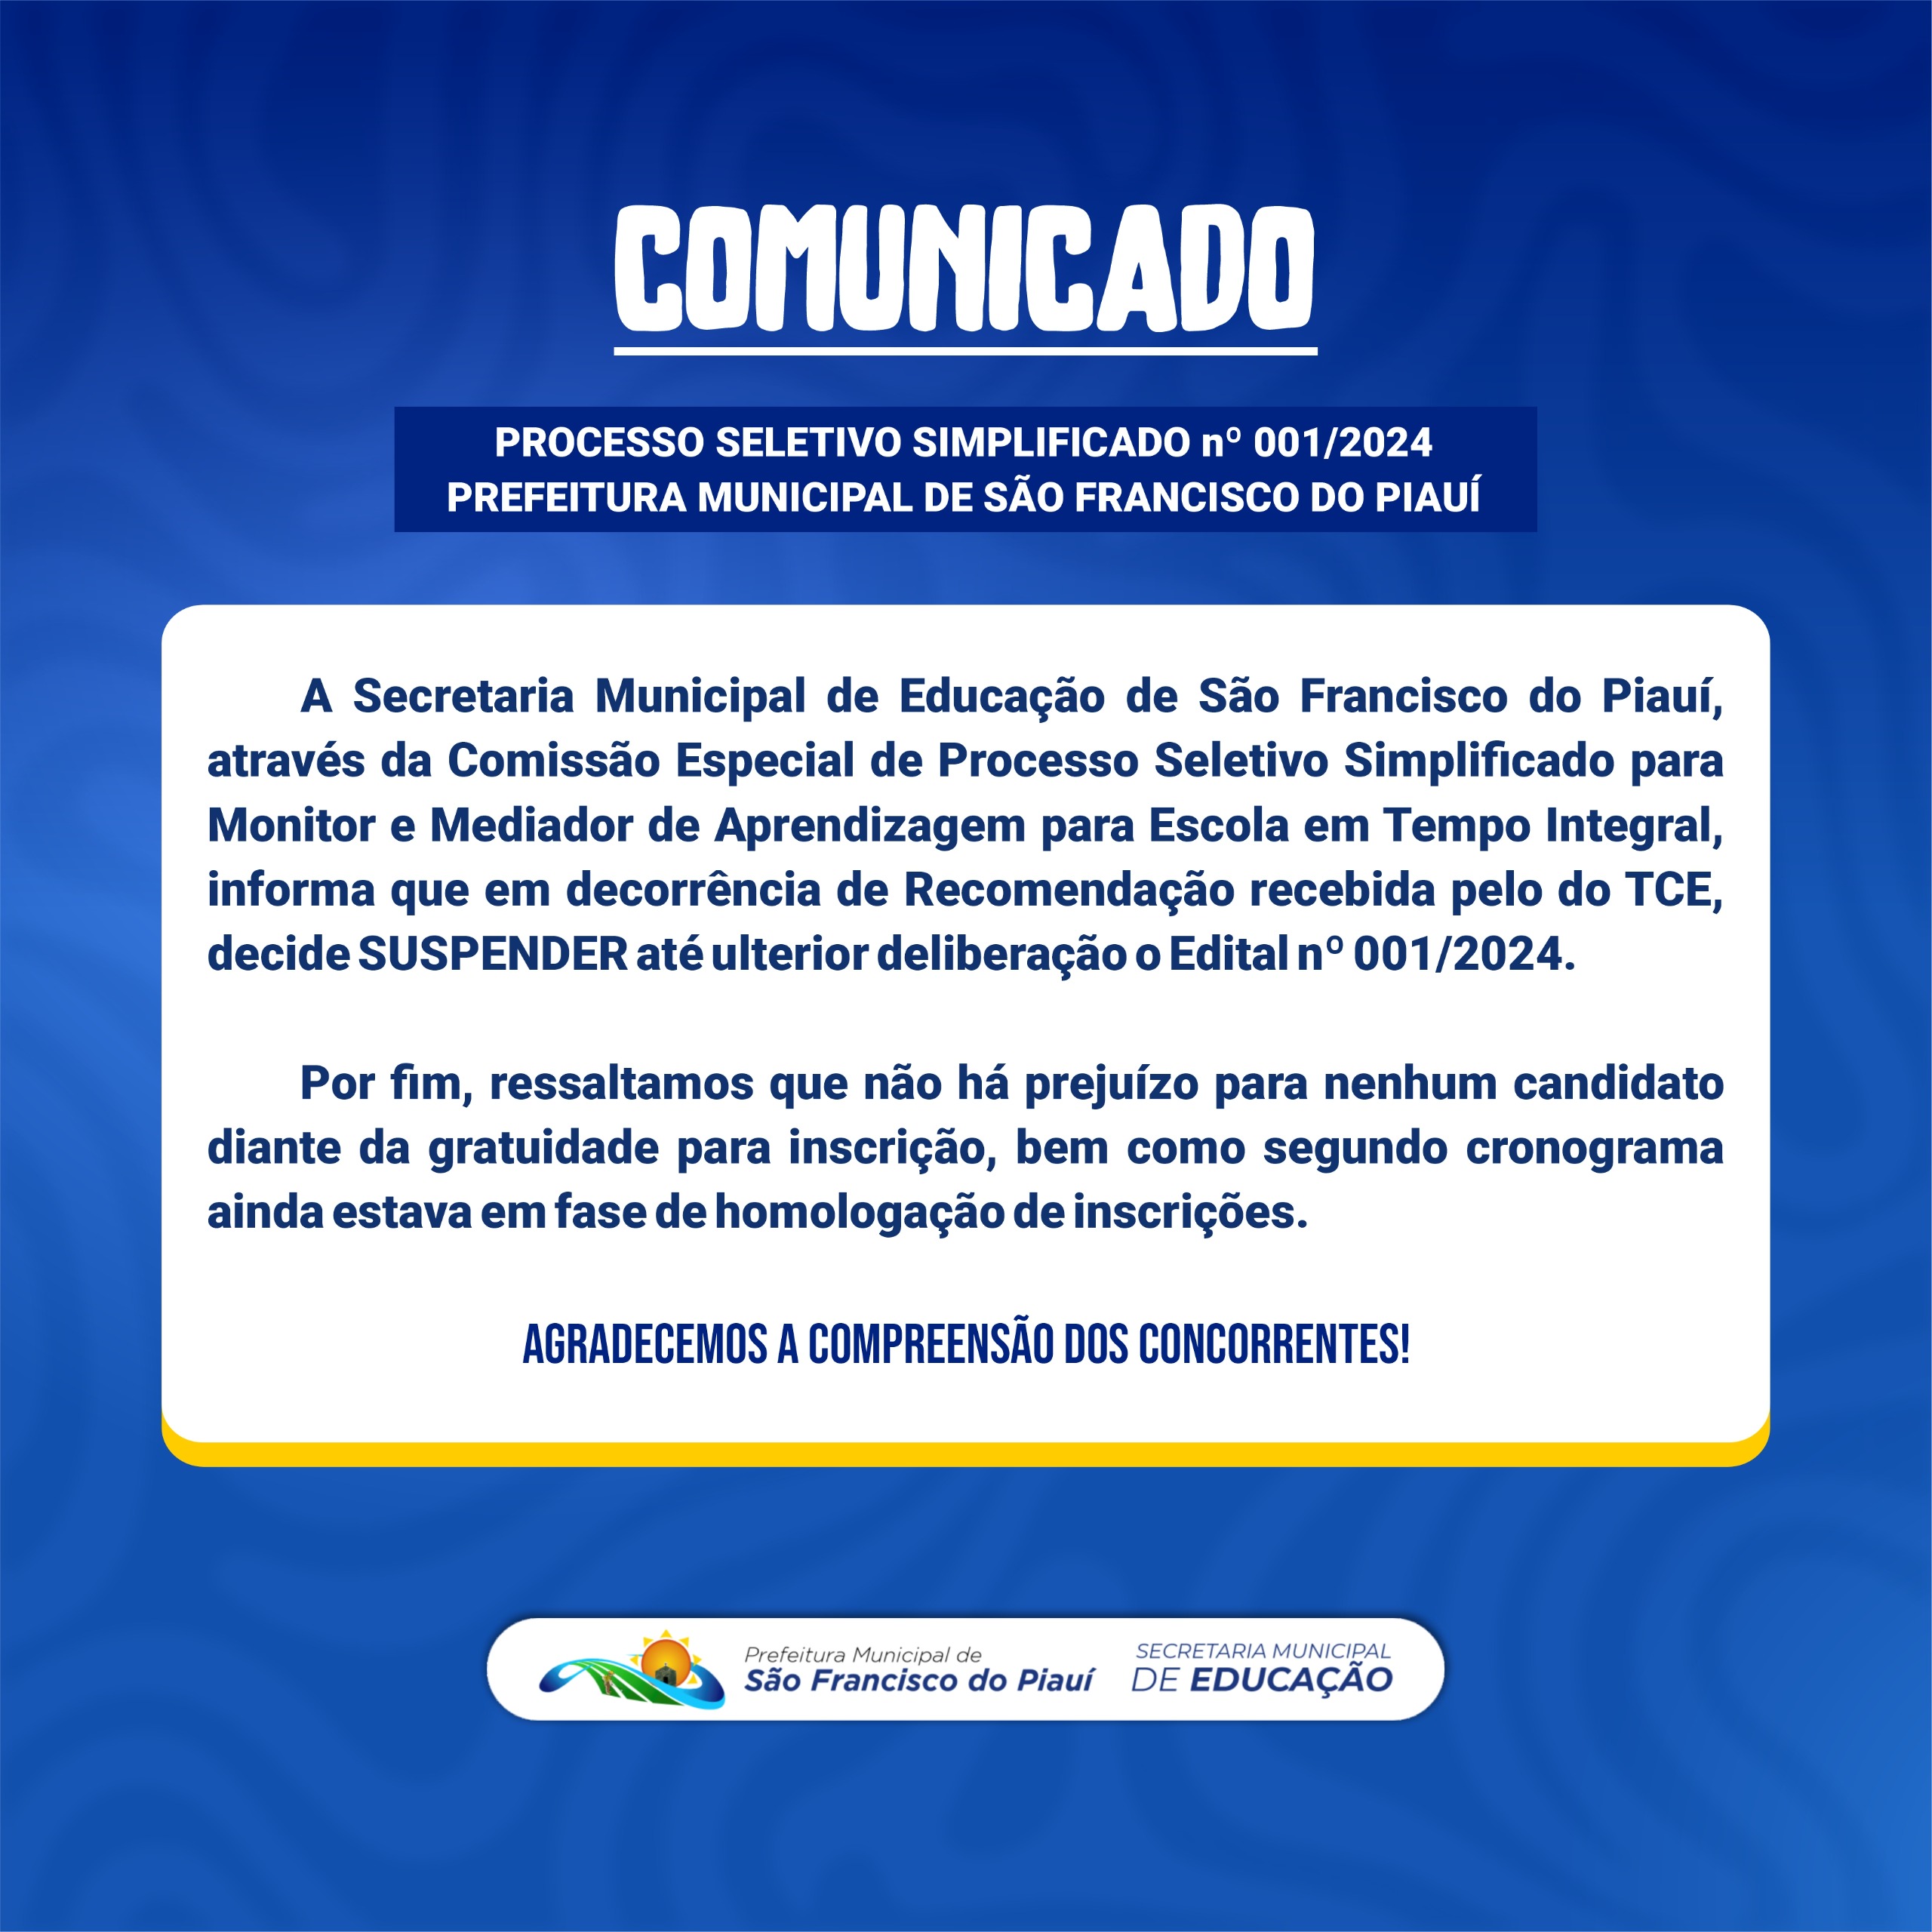  A Prefeitura de São Francisco do Piauí,  informa que atenderá á recomendação do TCE, no sentido de suspender  até ulterior deliberação o Edital nº 001/2024.